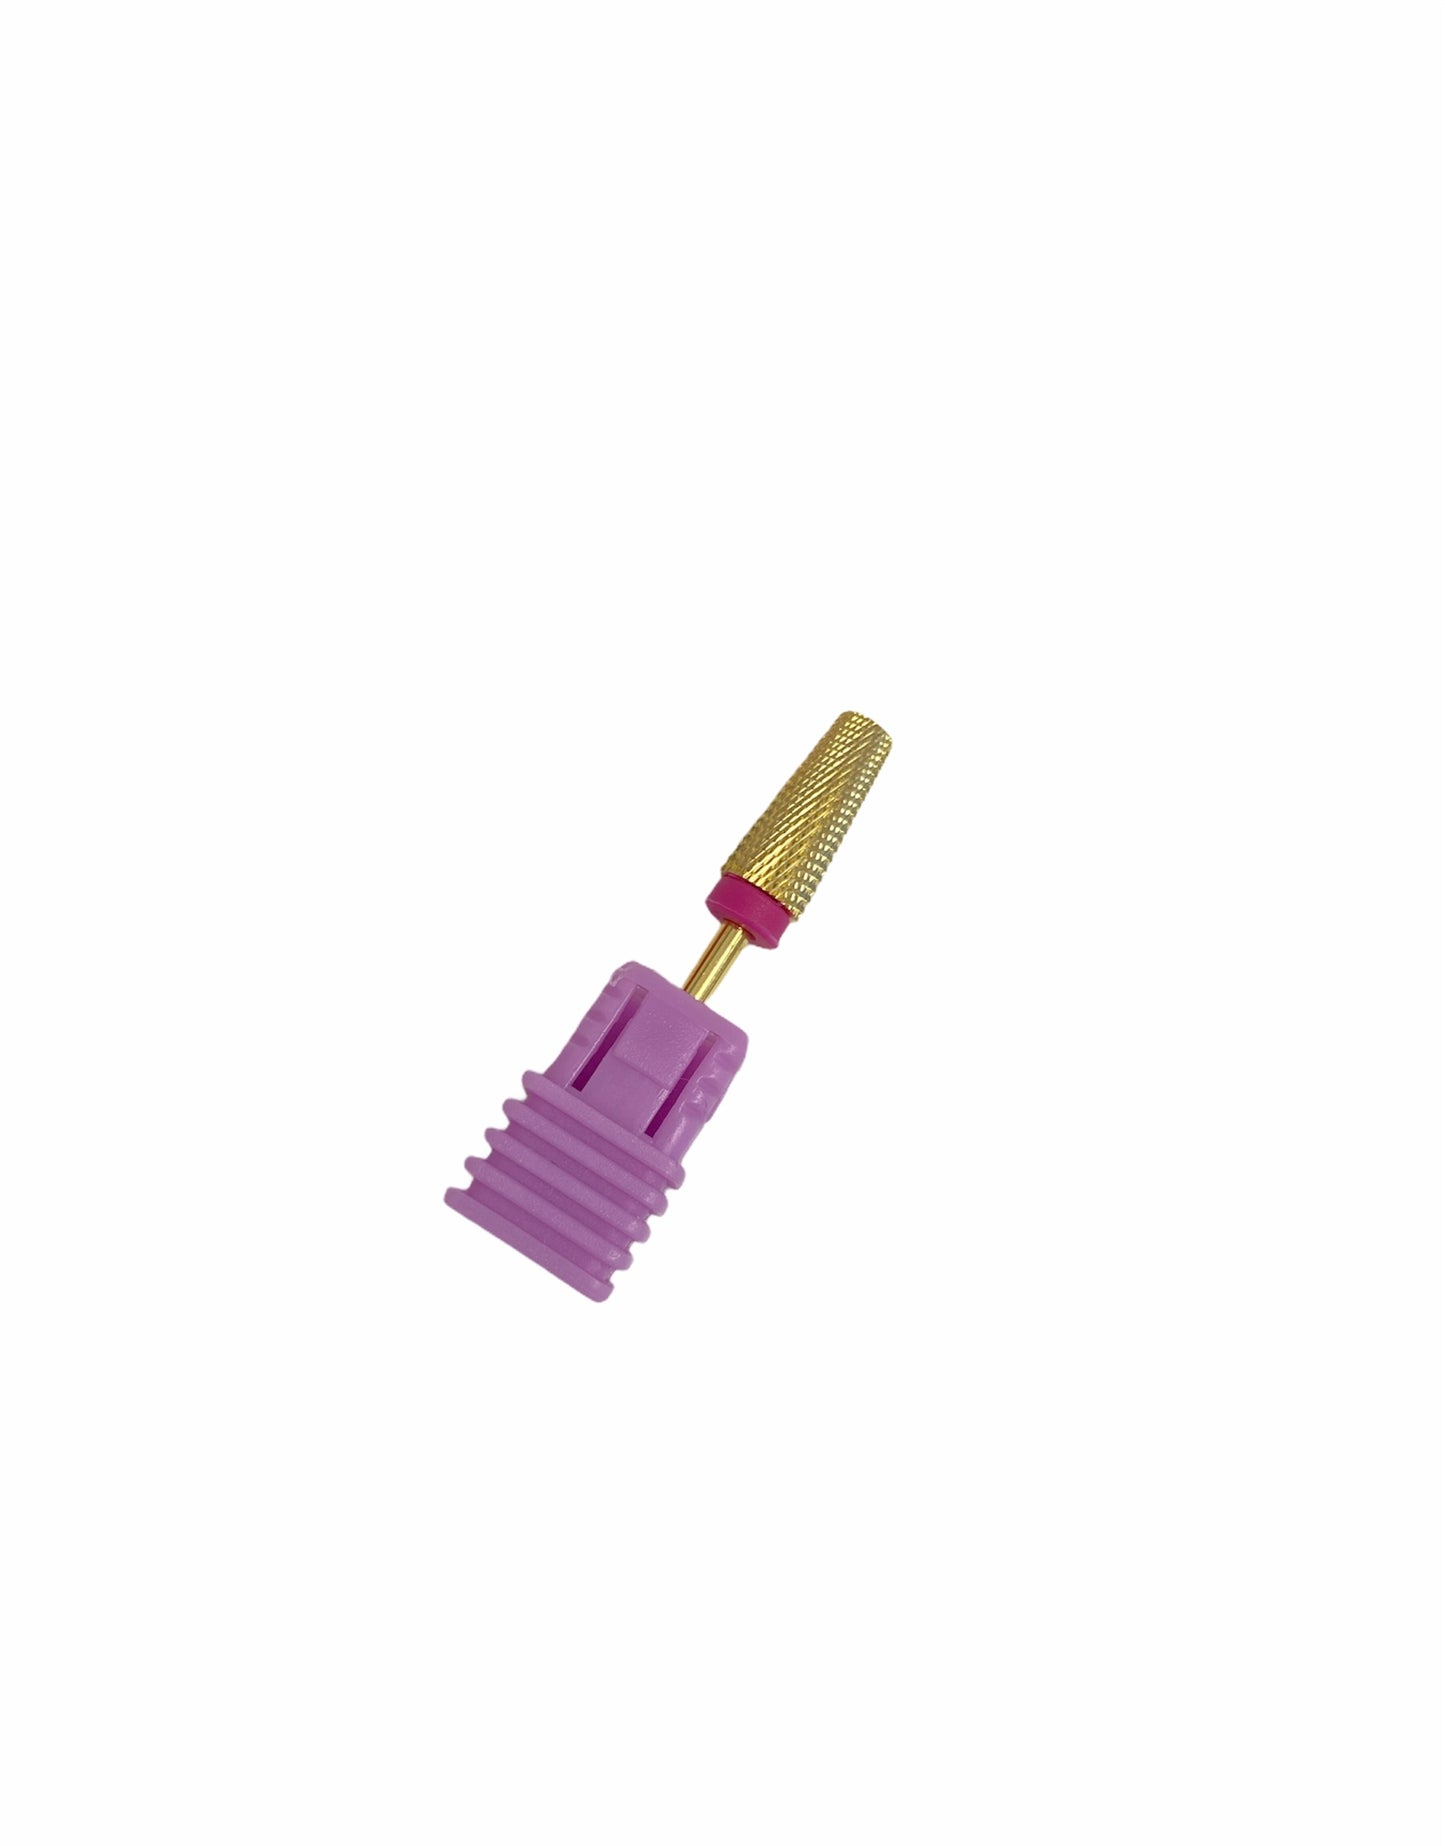 Drill bit Umbrella B  3/32  - Gold 2XF - Premier Nail Supply 